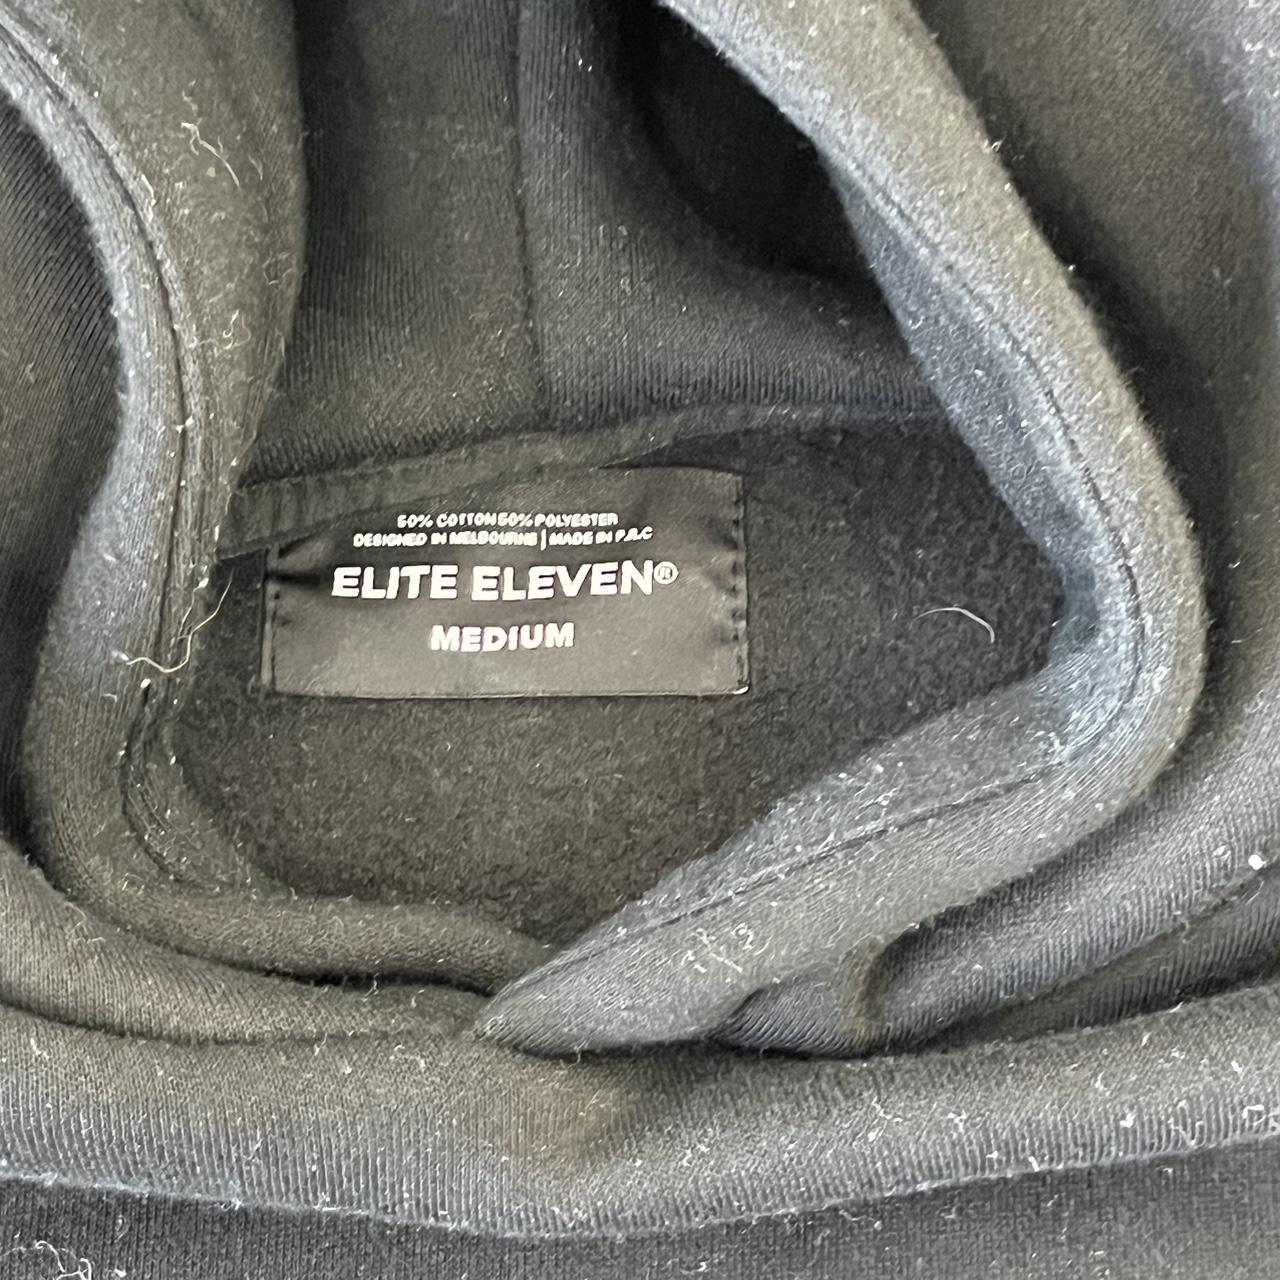 EliteEleven hoodie Men’s size medium Great condition - Depop